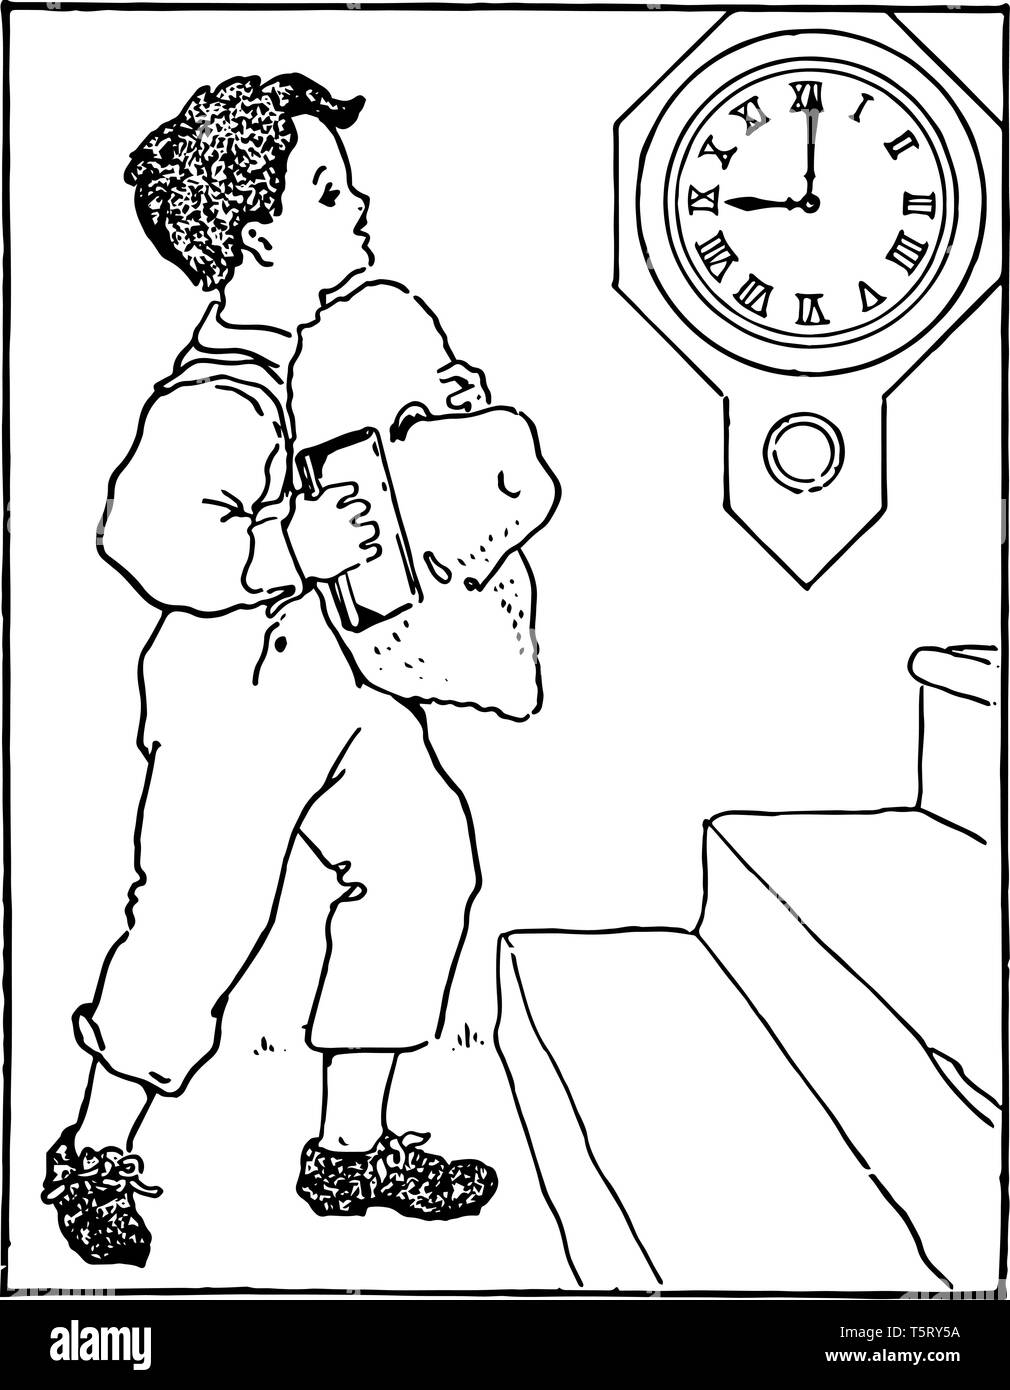 Un bambino salire la scala con un cappello e una scatola in mano a 9:00, vintage disegno della linea di incisione o illustrazione. Illustrazione Vettoriale